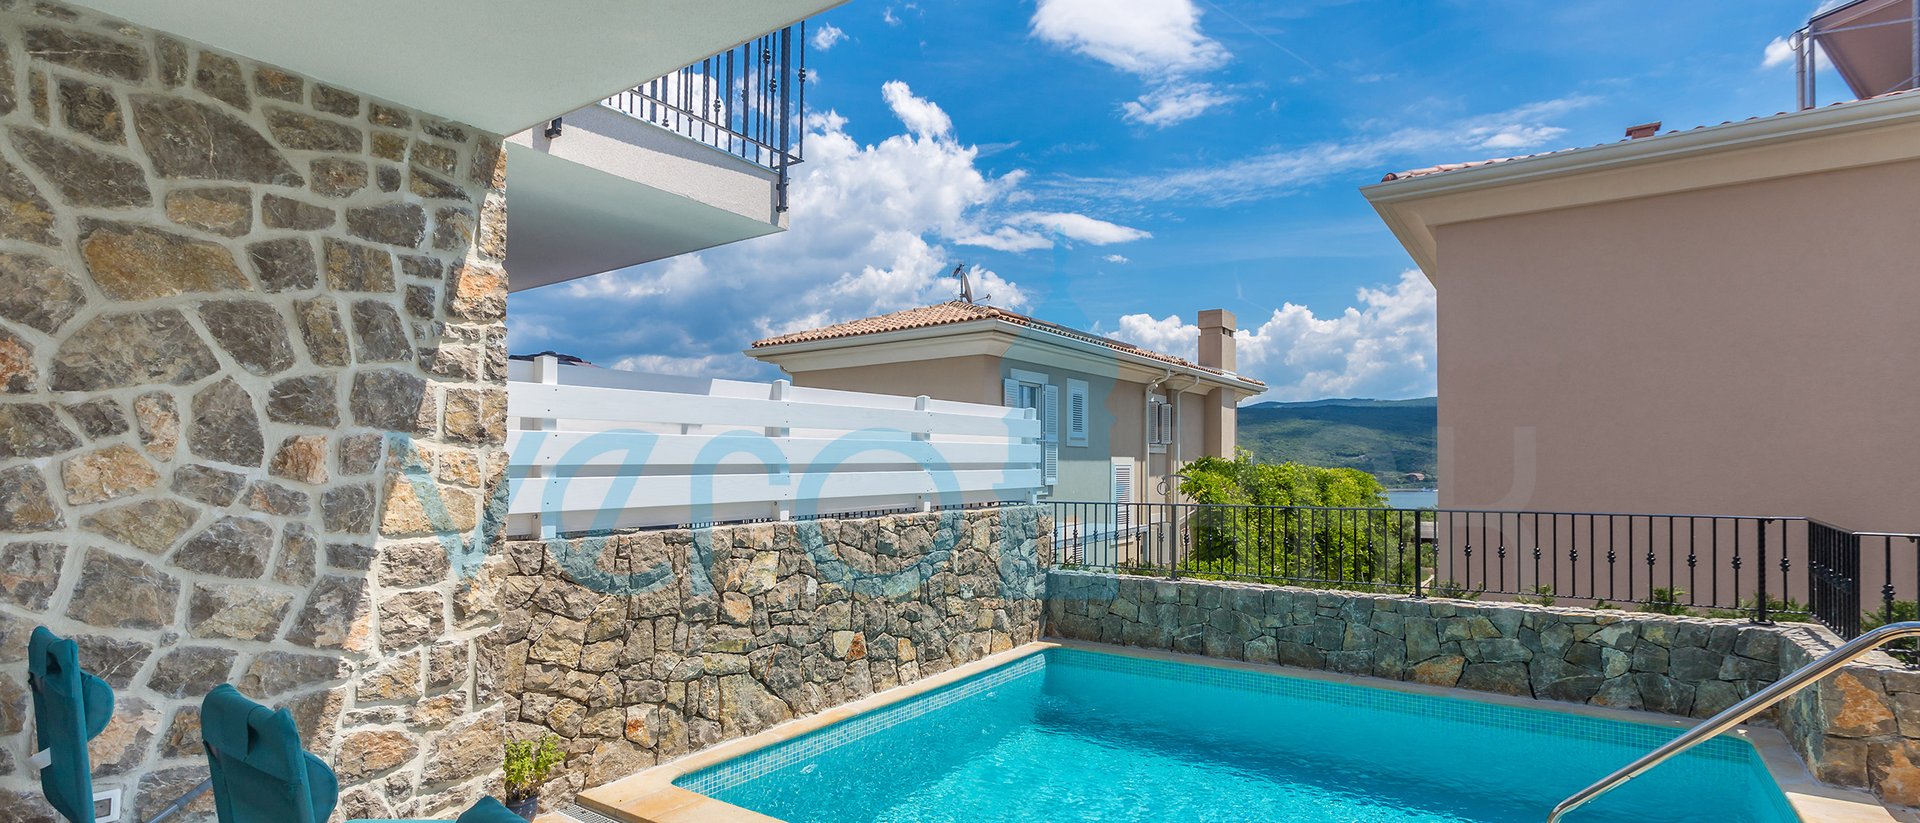 Insel Krk, Stadt Krk, Umgebung, wunderschöne hochmoderne Villa mit Pool, Terrasse und Meerblick, zu verkaufen